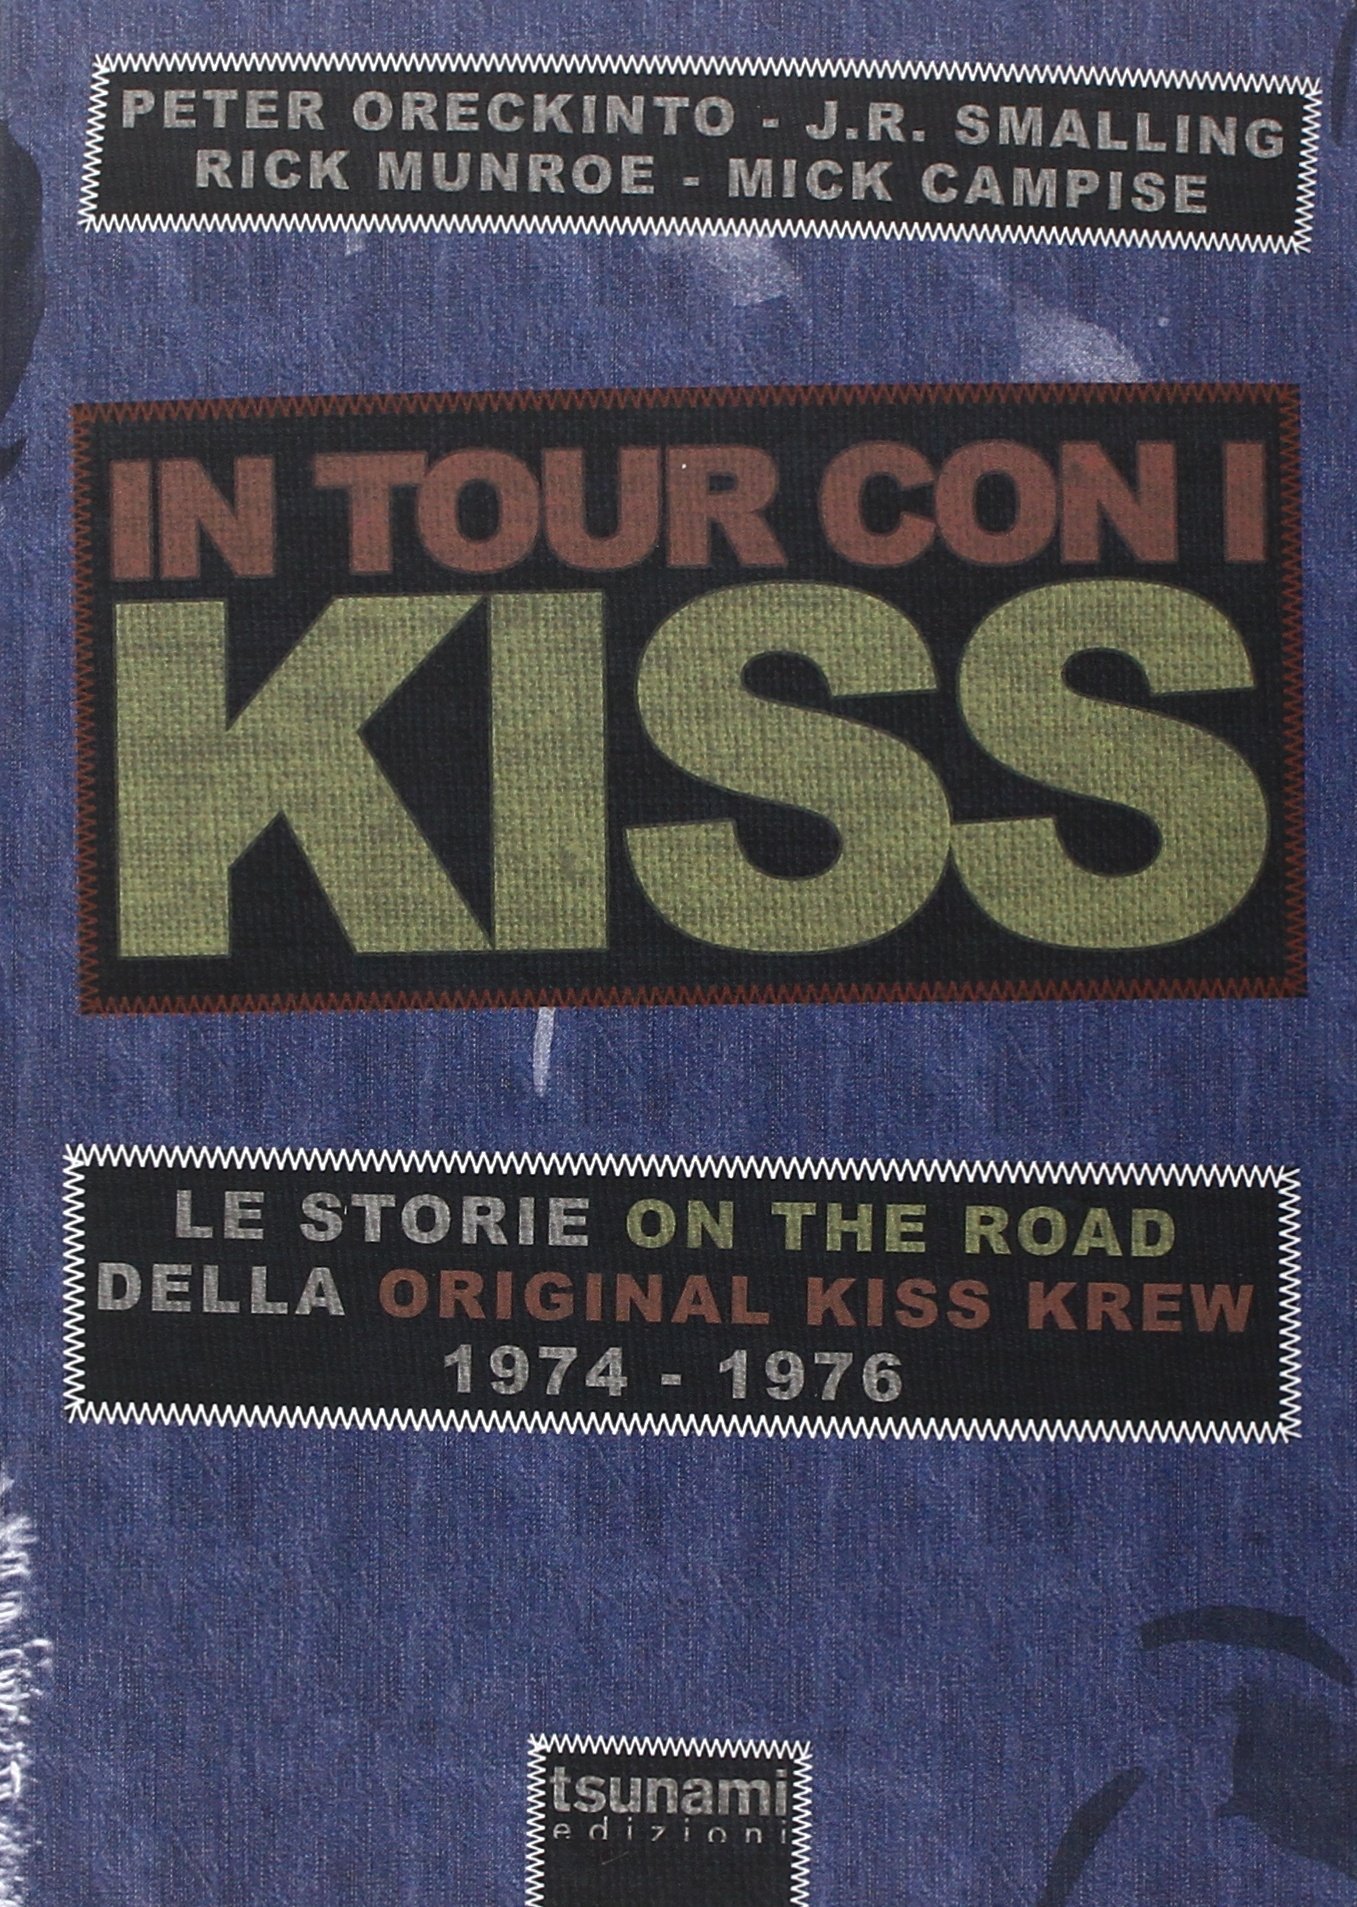 IN TOUR CON I KISS